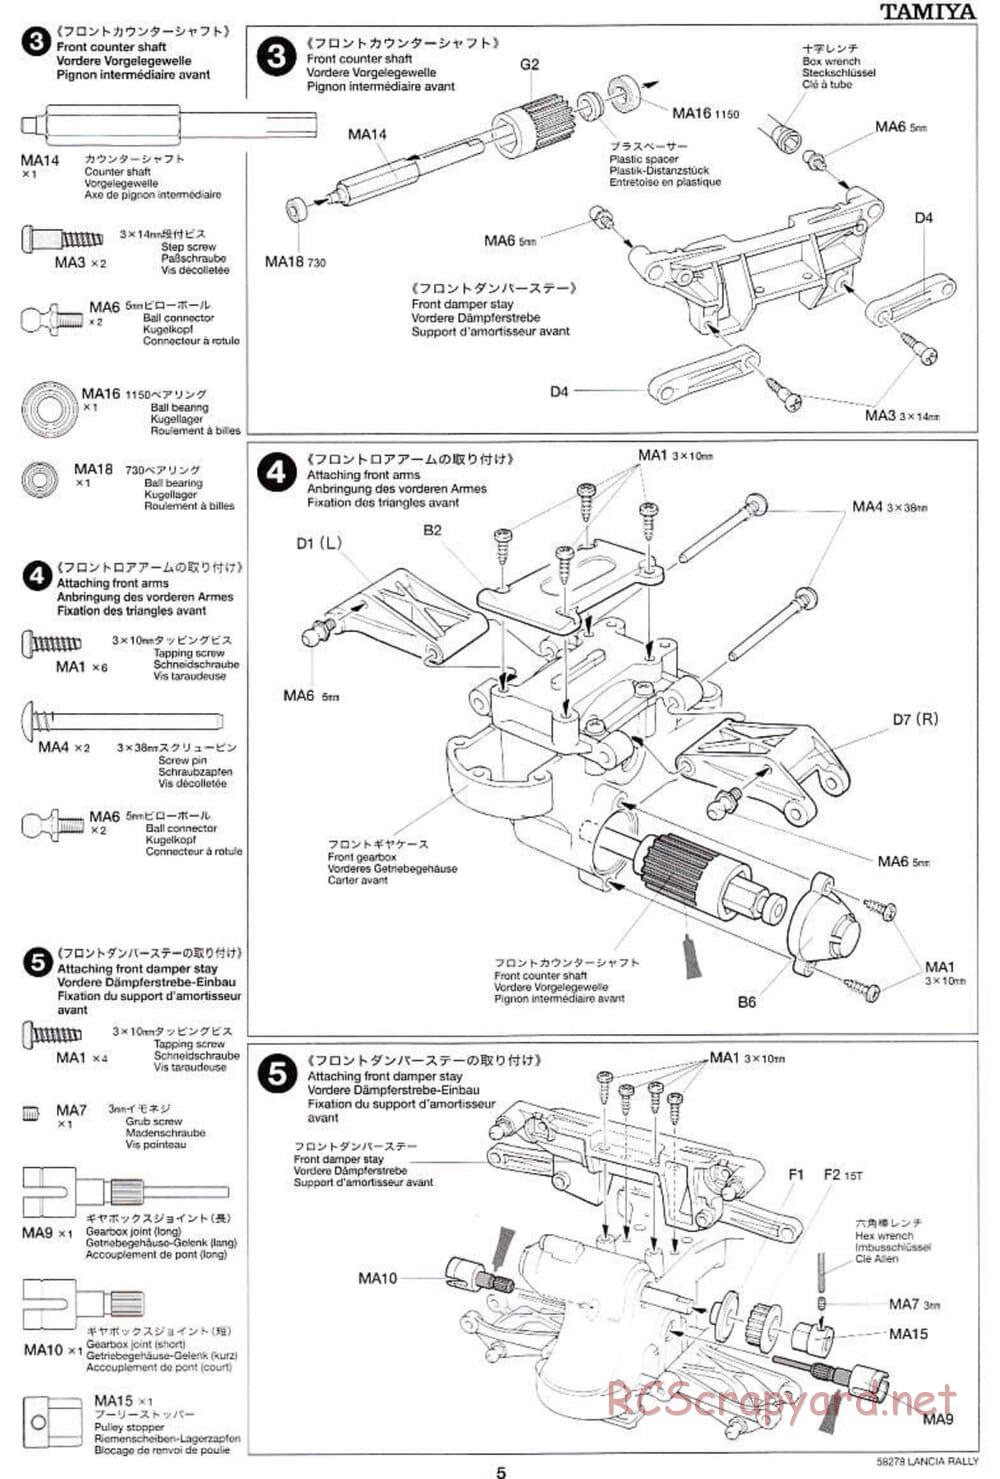 Tamiya - Lancia 037 Rally - TA-03RS Chassis - Manual - Page 5